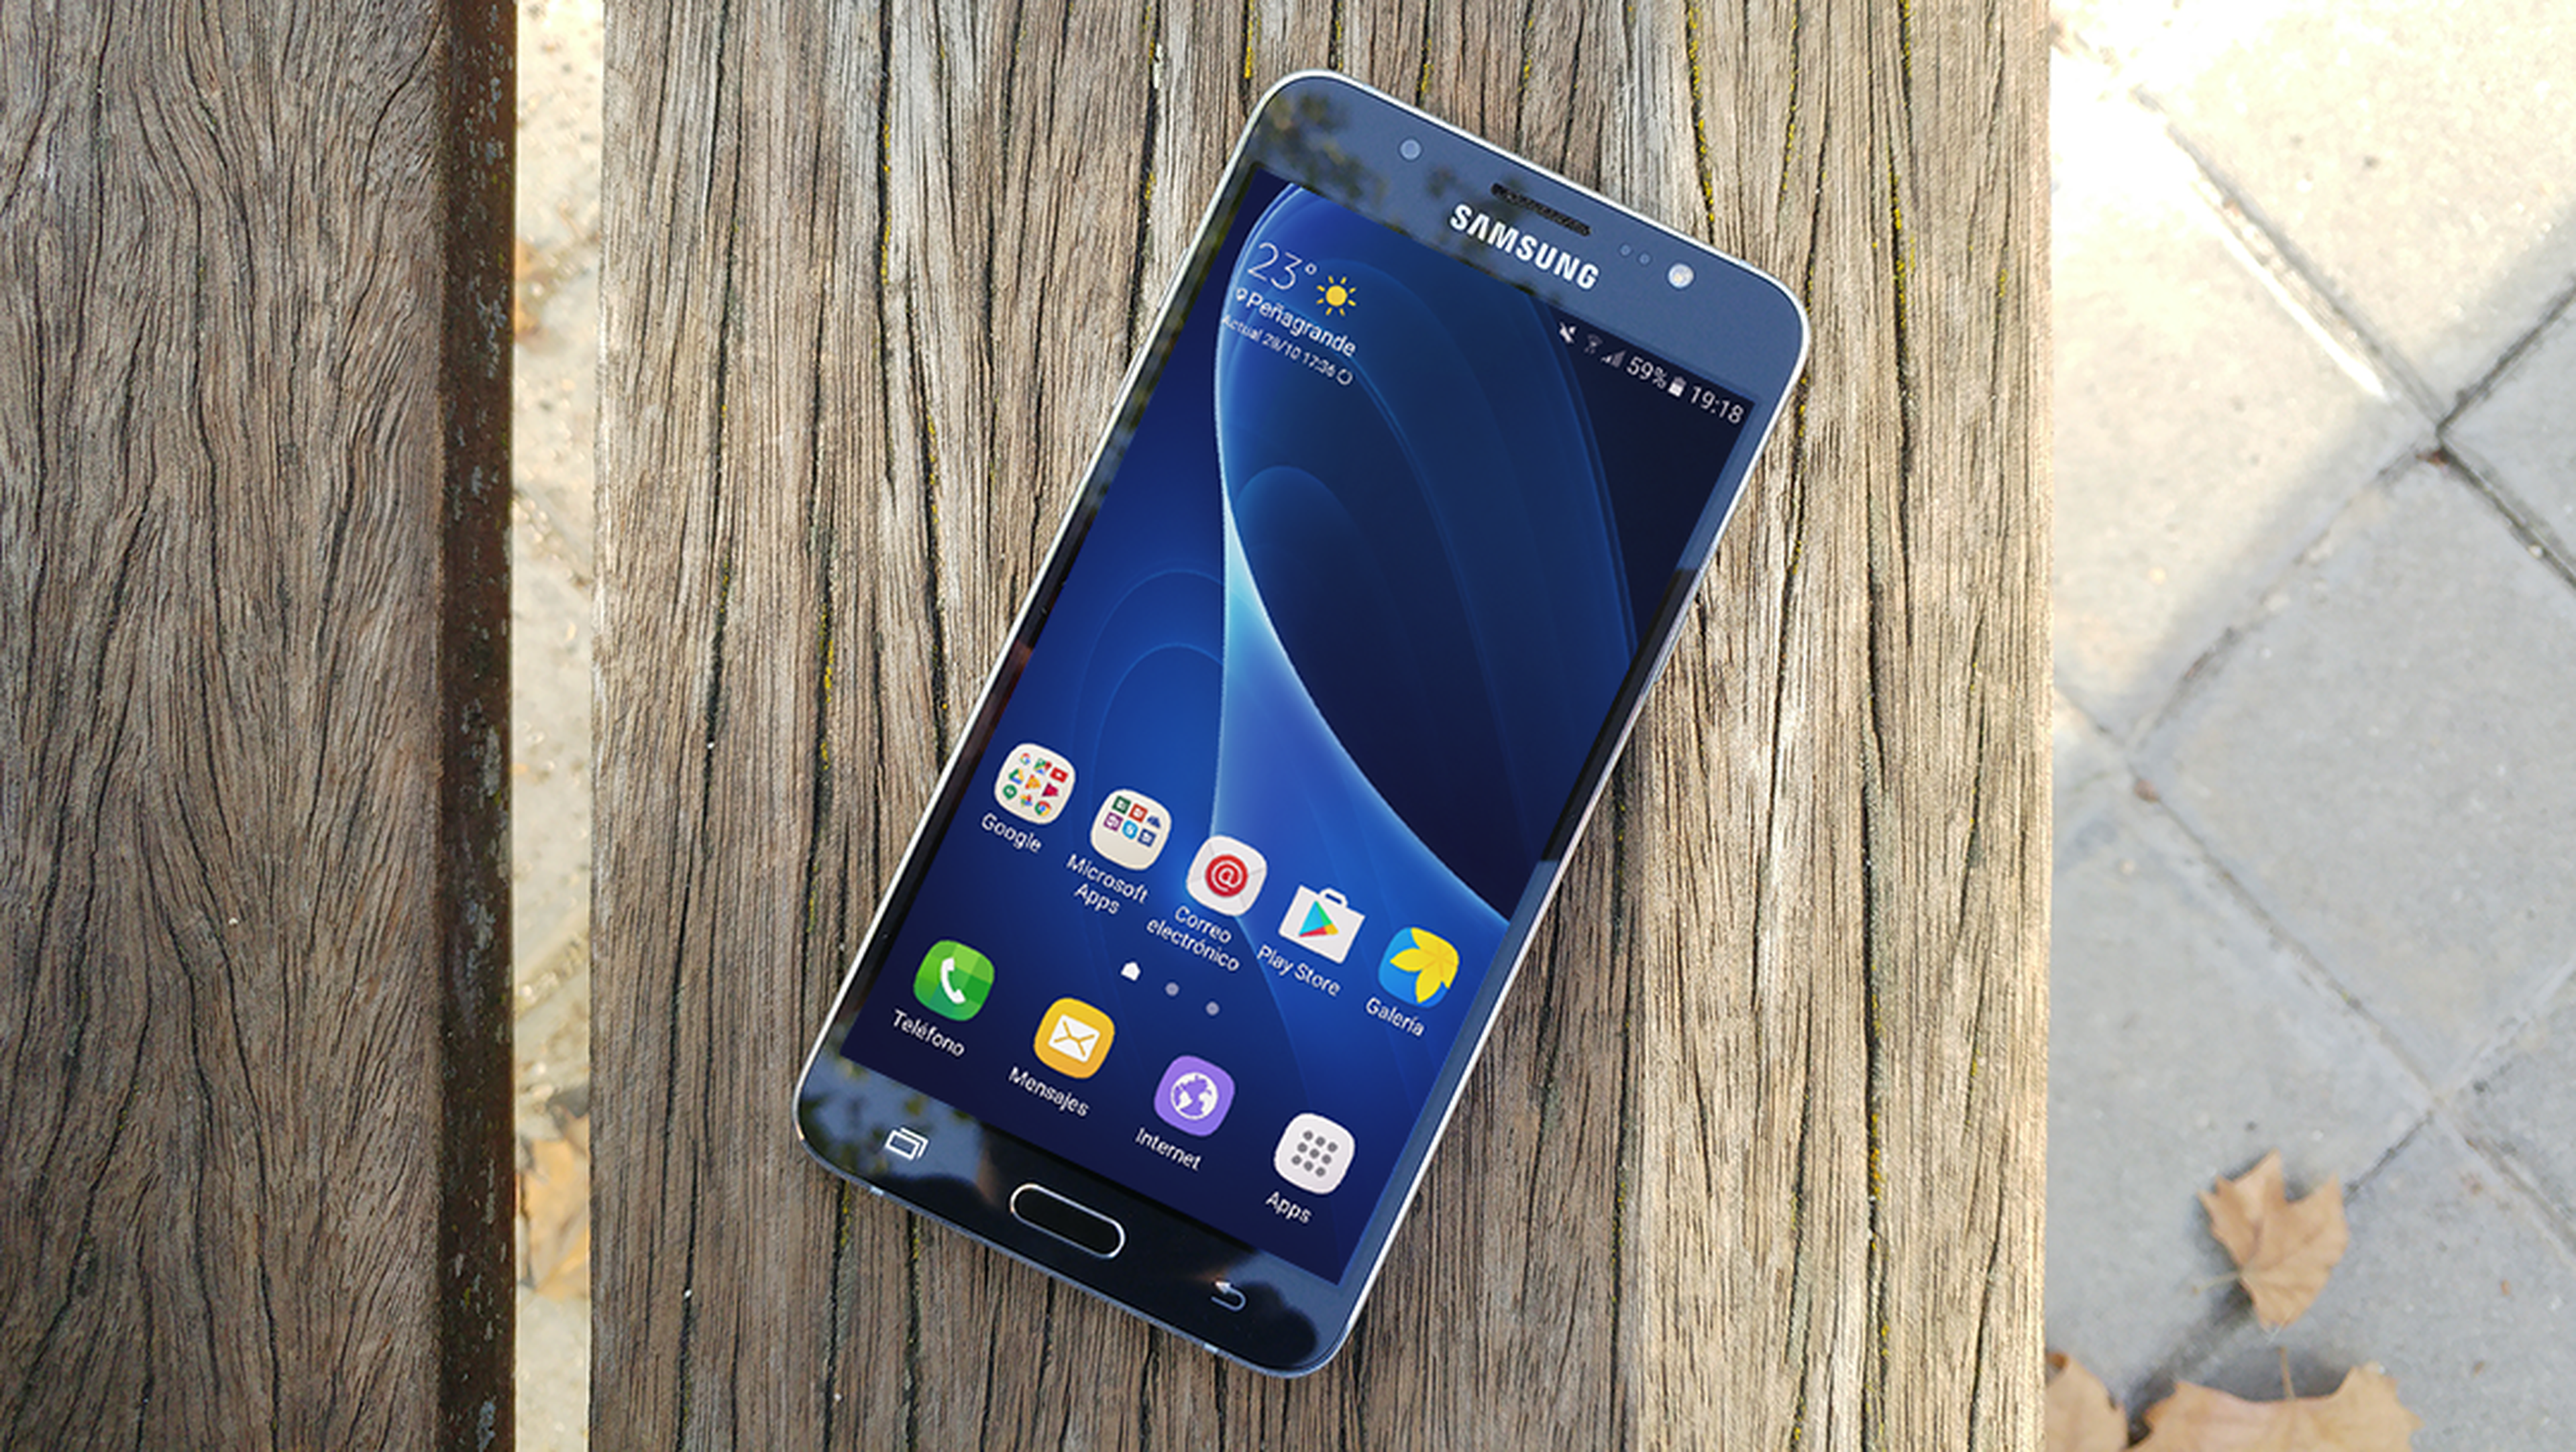 Colonial Comparación encender un fuego Samsung Galaxy J7 (2016), análisis y opinión | Computer Hoy